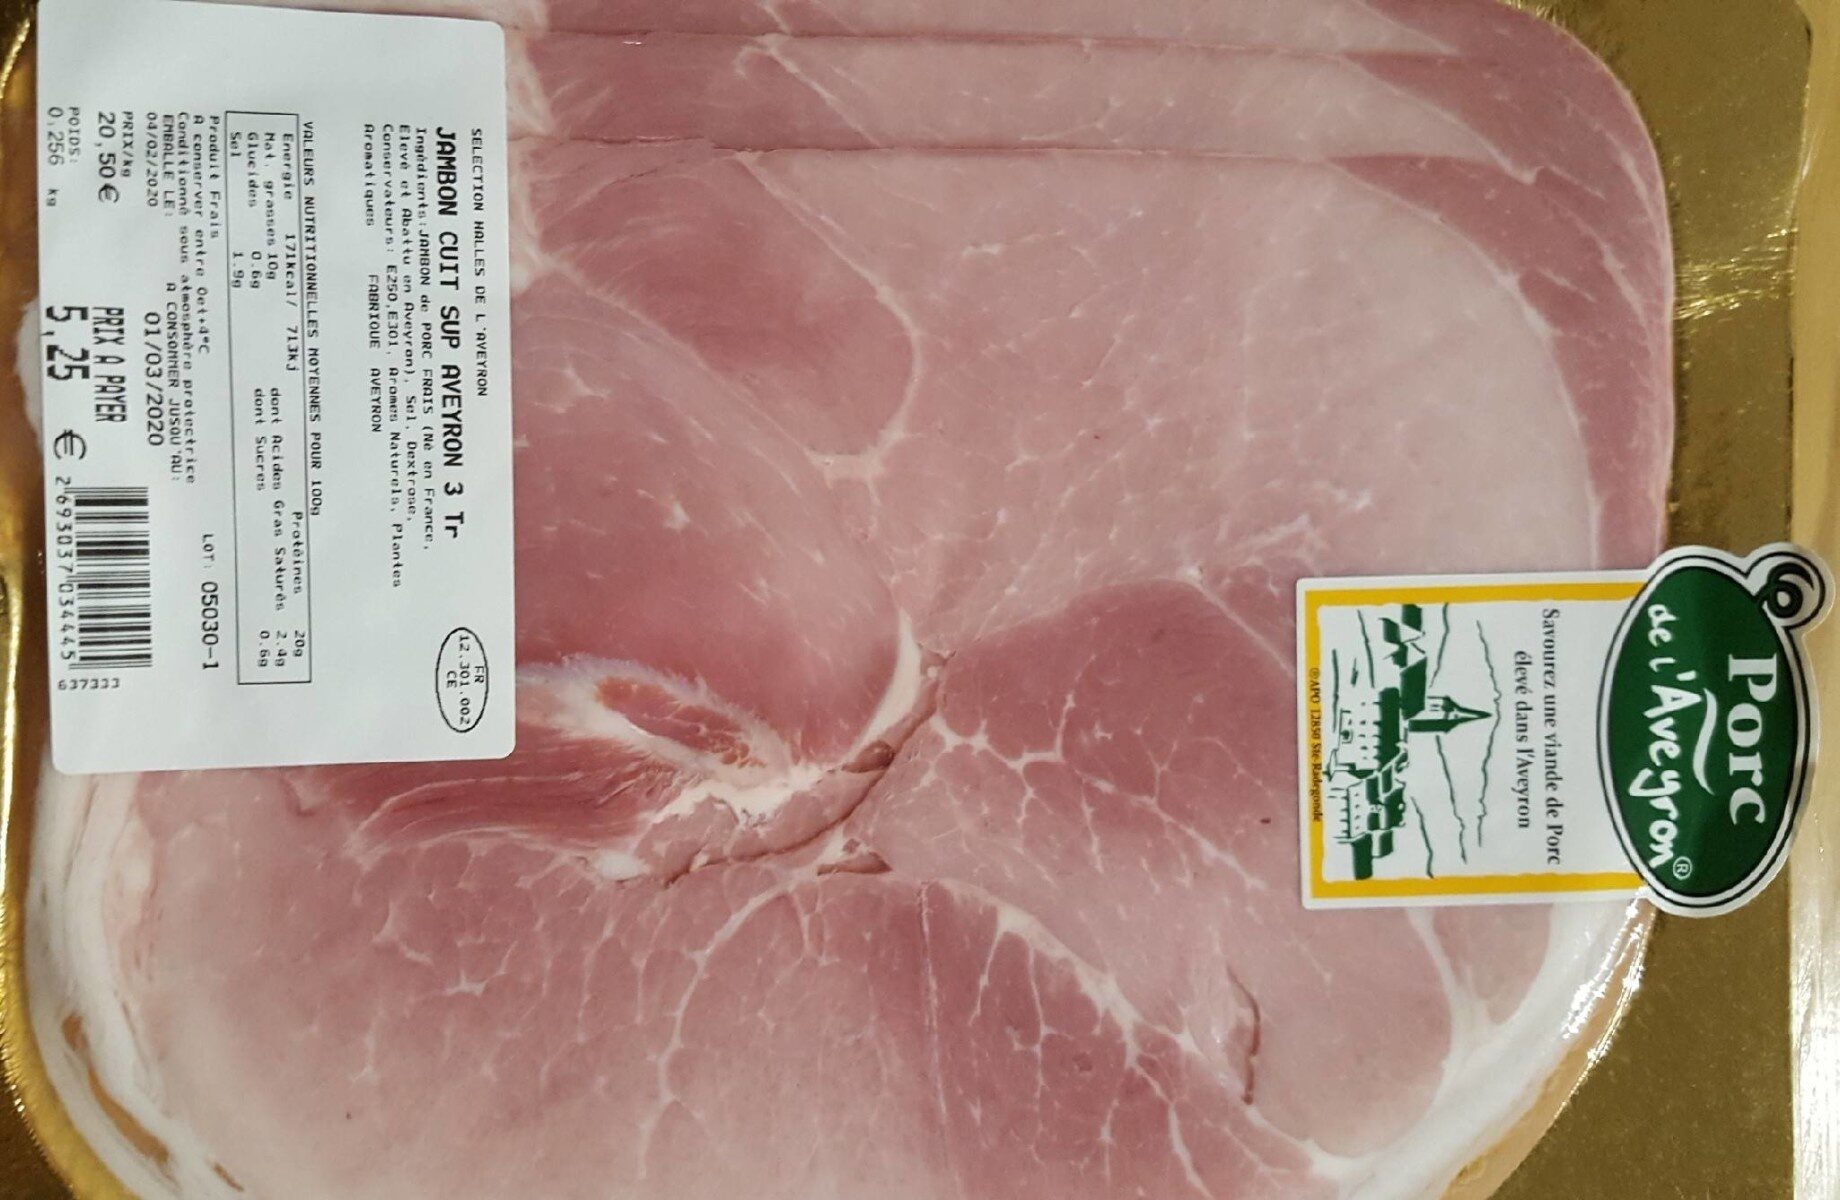 Porc de l'aveyron - Product - fr